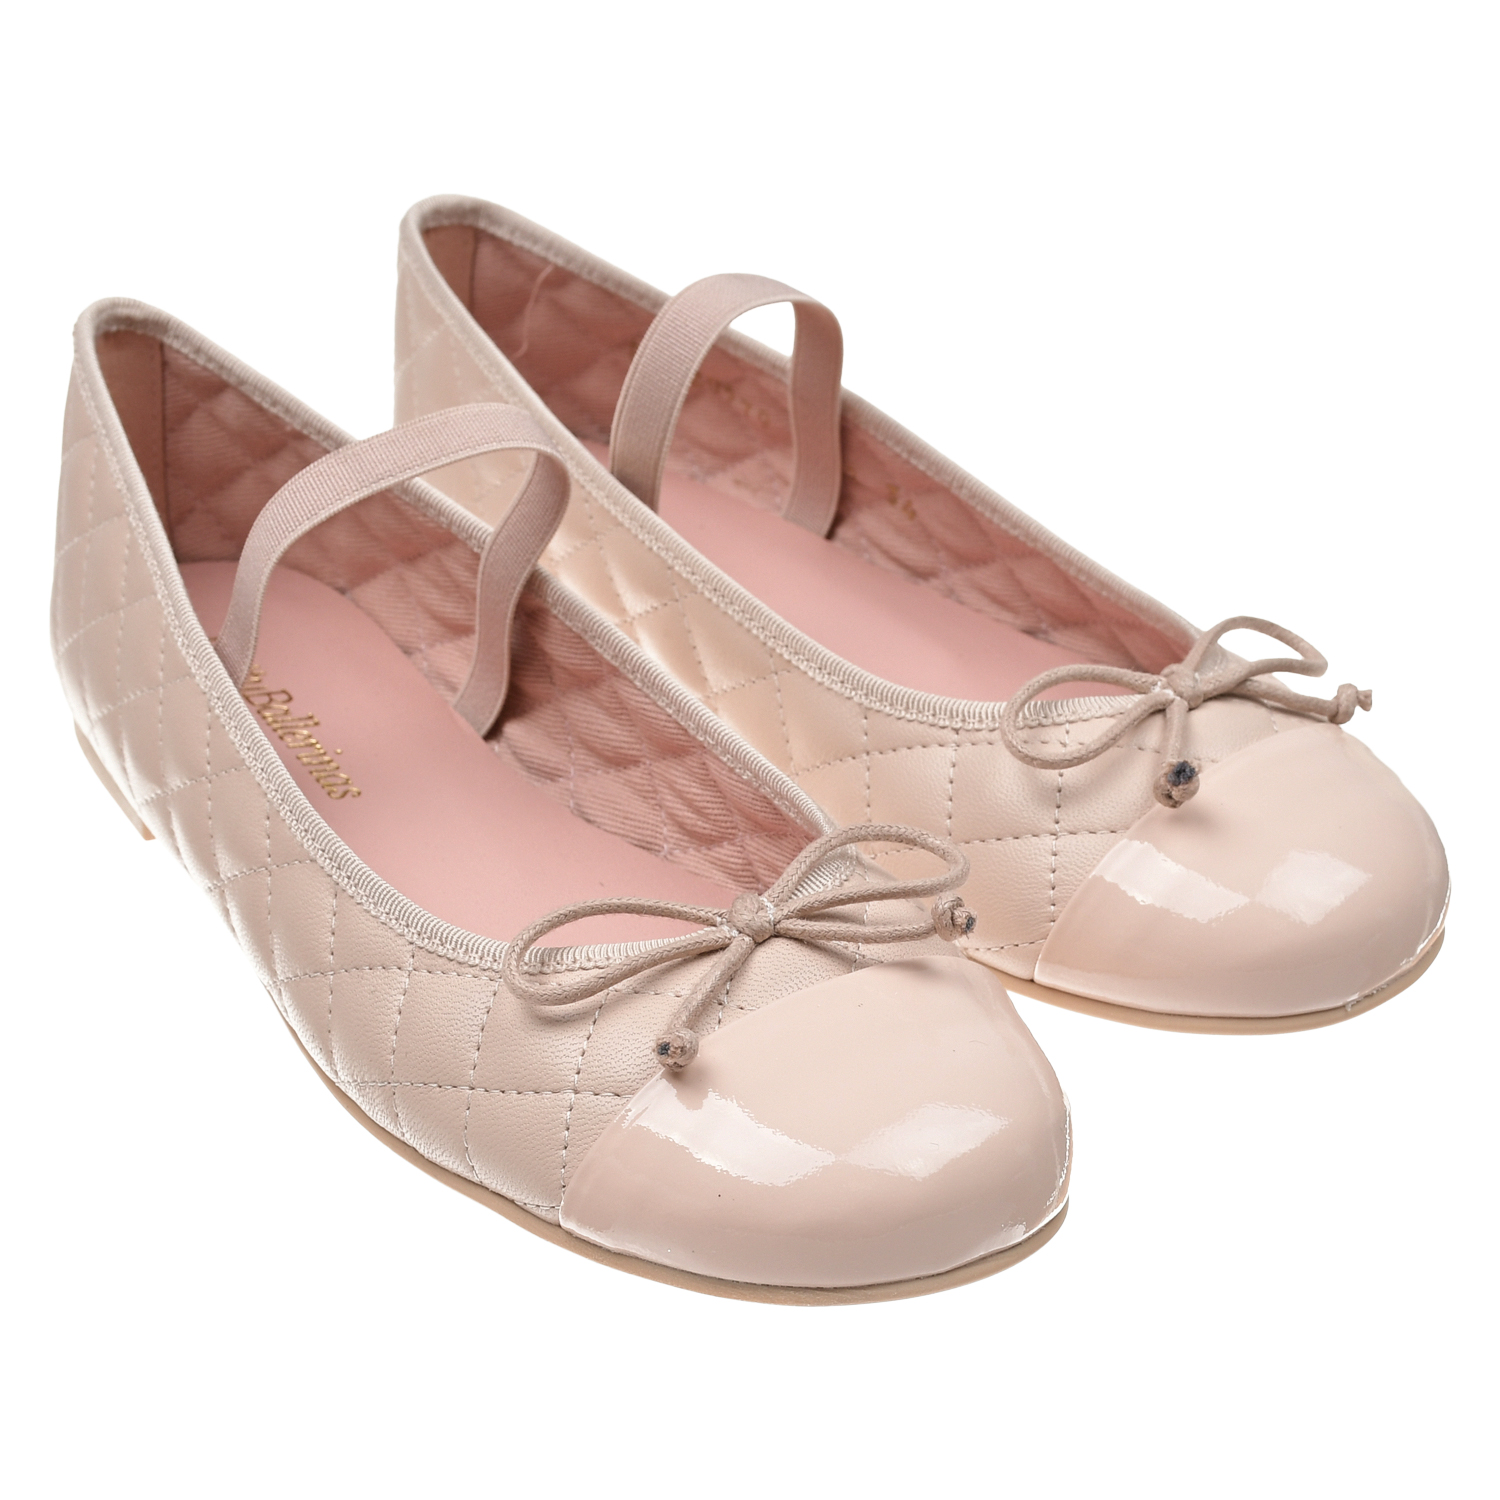 Пудровые туфли со стеганой отделкой Pretty Ballerinas пудровые туфли со стеганой отделкой pretty ballerinas